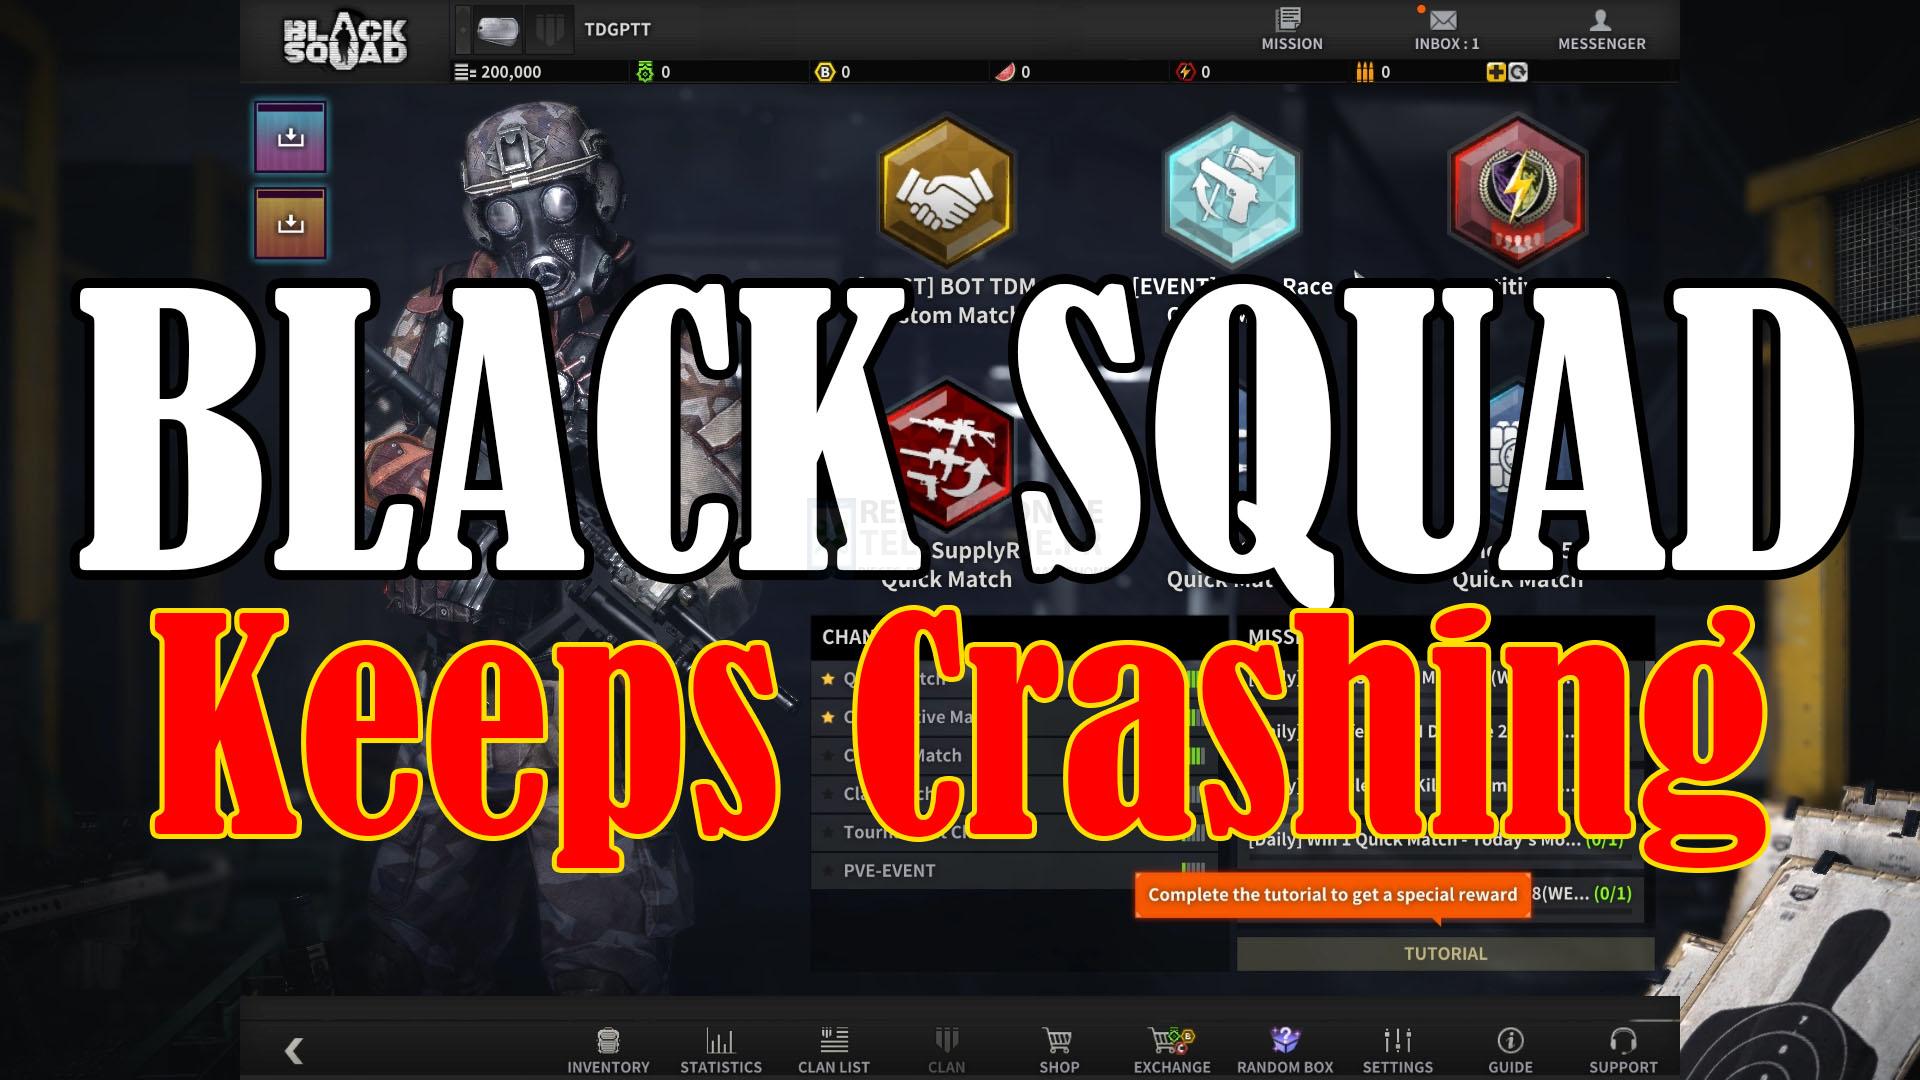 Comment réparer le crash de Black Squad sur Steam ?